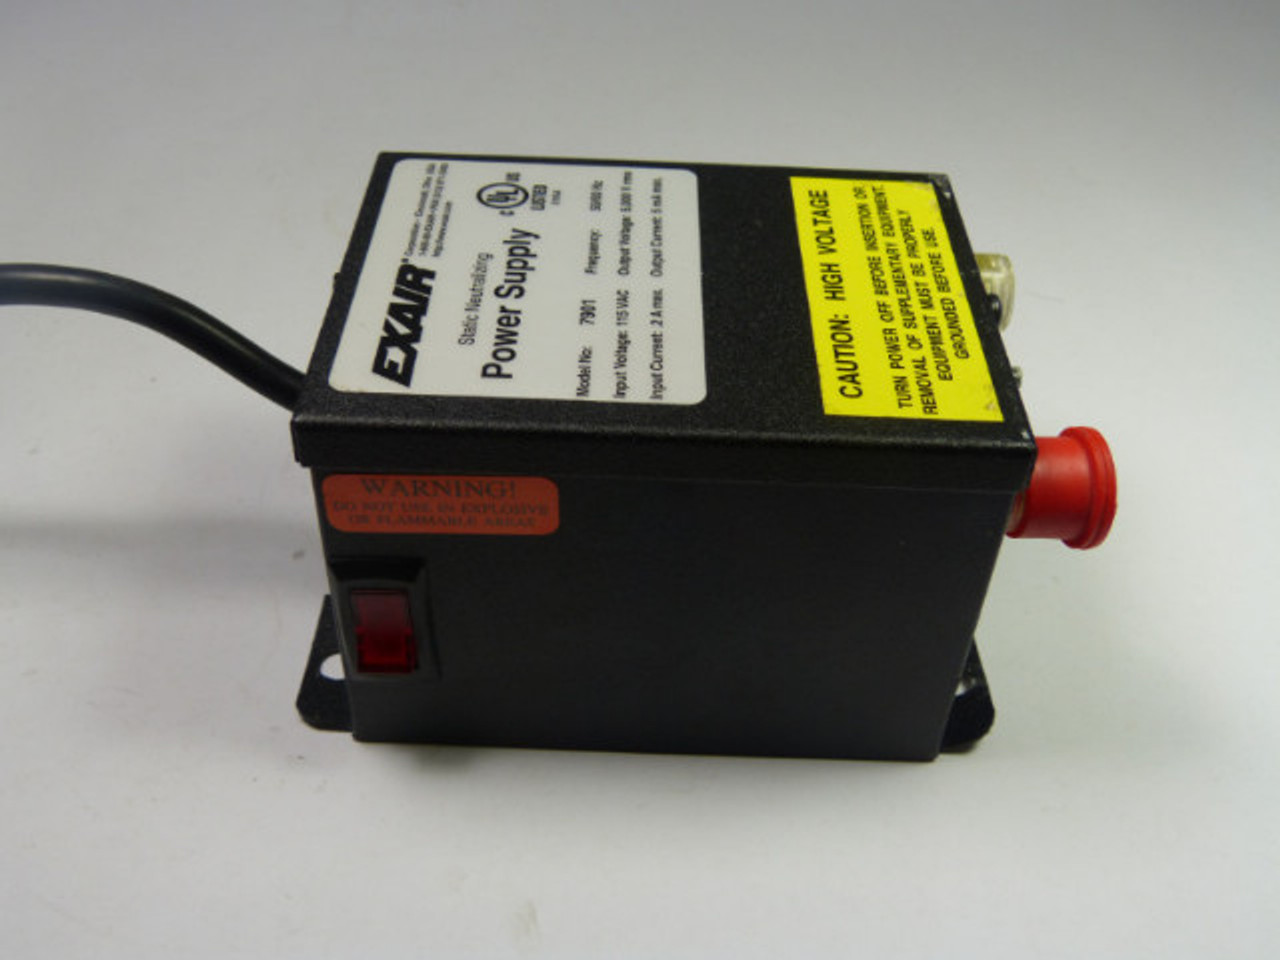 Exair 7901 Power Supply 115 Vac 50/60 Hz USED